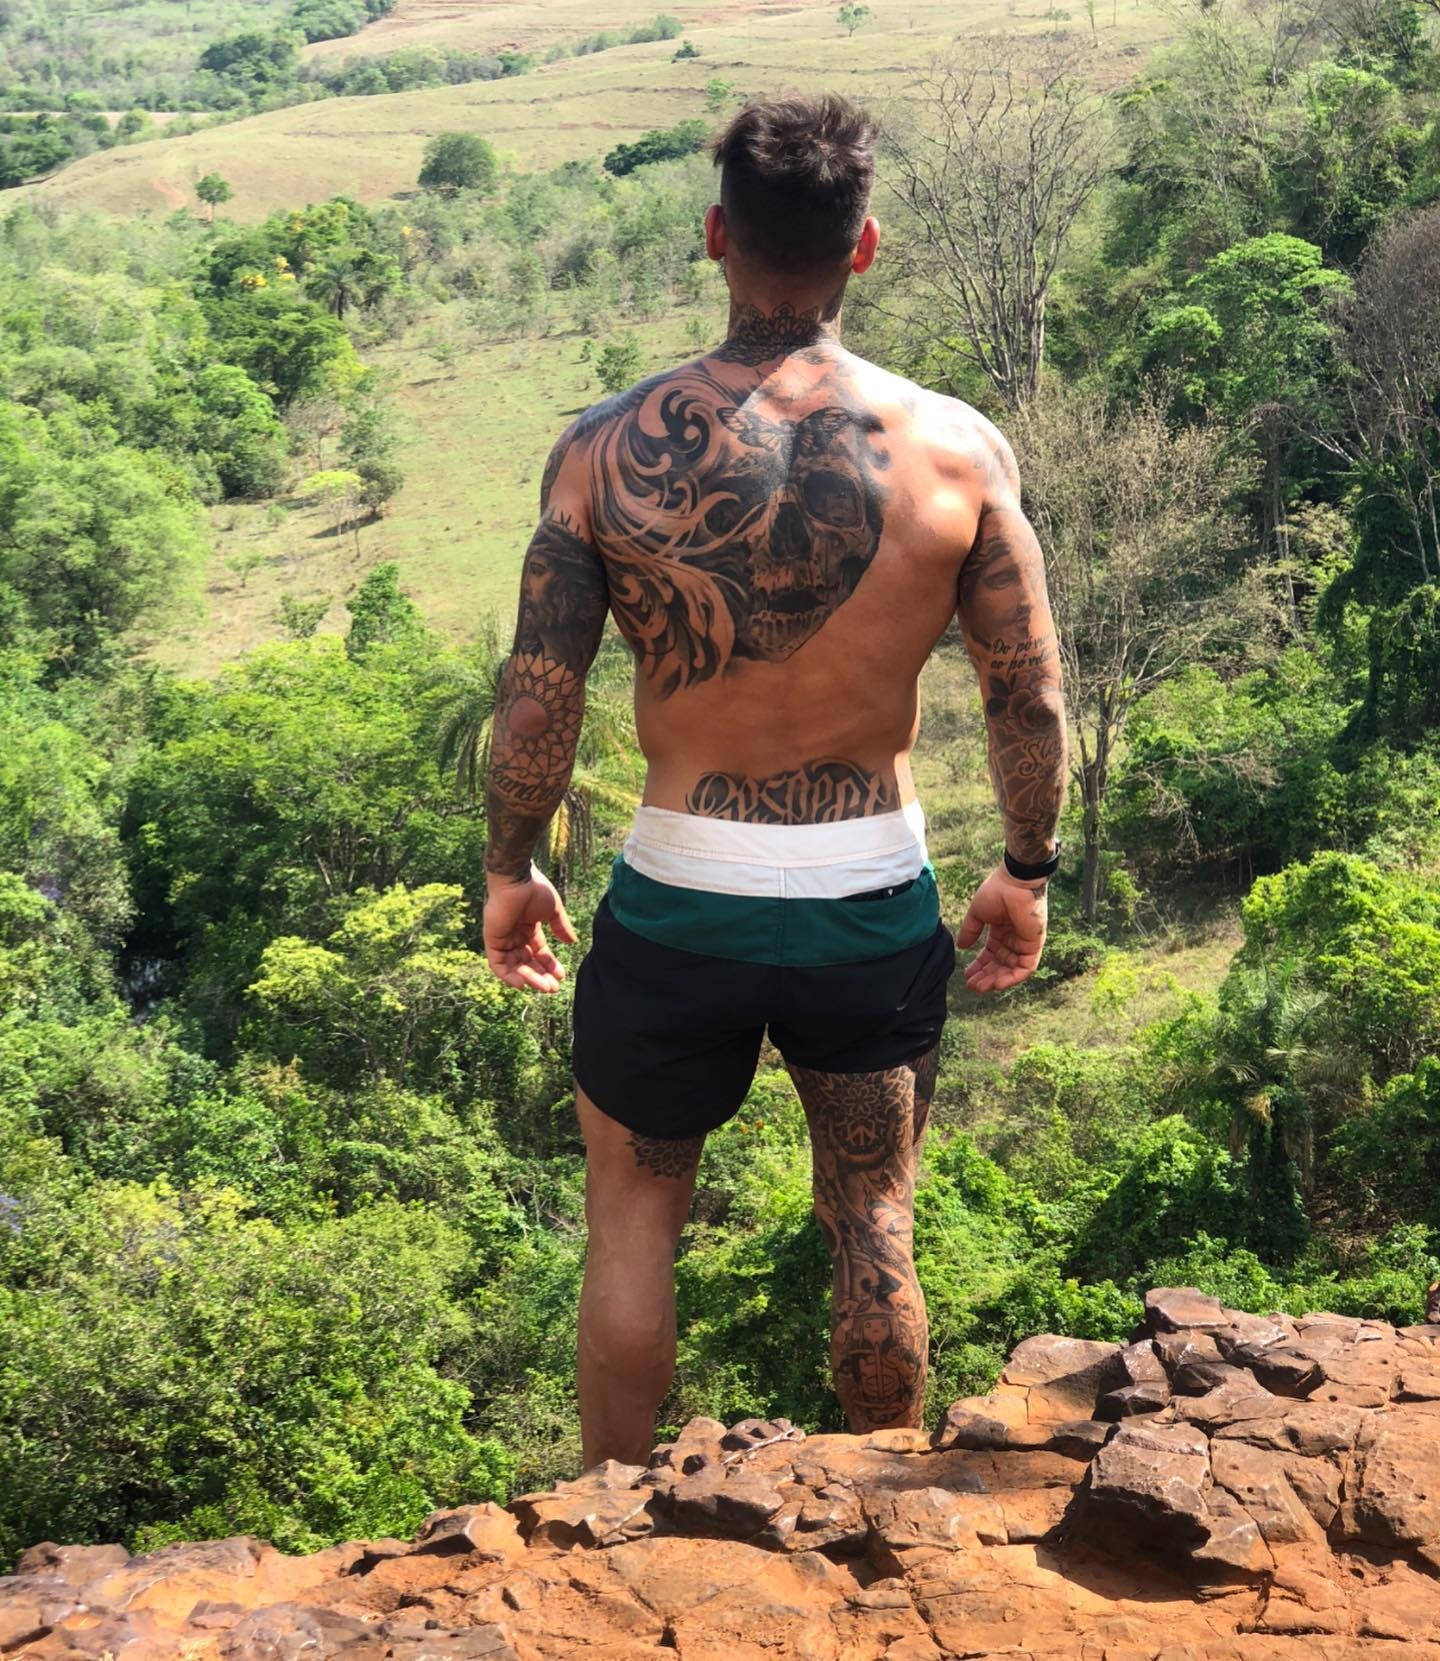 Lucas Lucco publica foto curtindo a natureza após fim de relacionamento: 'Não adianta ir por caminhos sem direção' (Foto: Reprodução / Instagram)